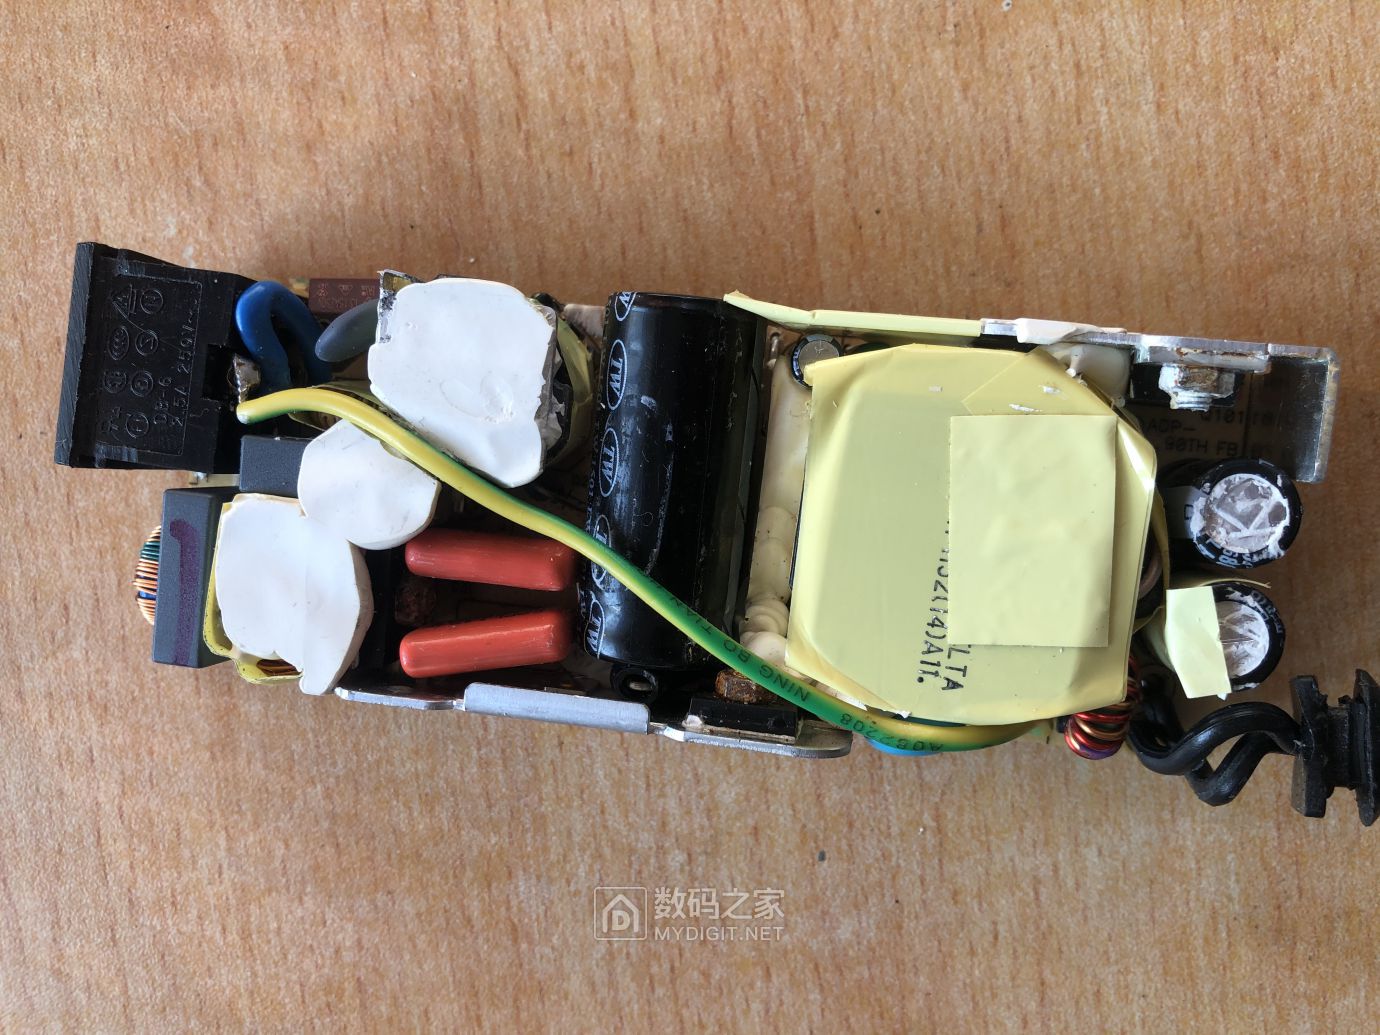 焊接到电路板上，鼠标正常了。